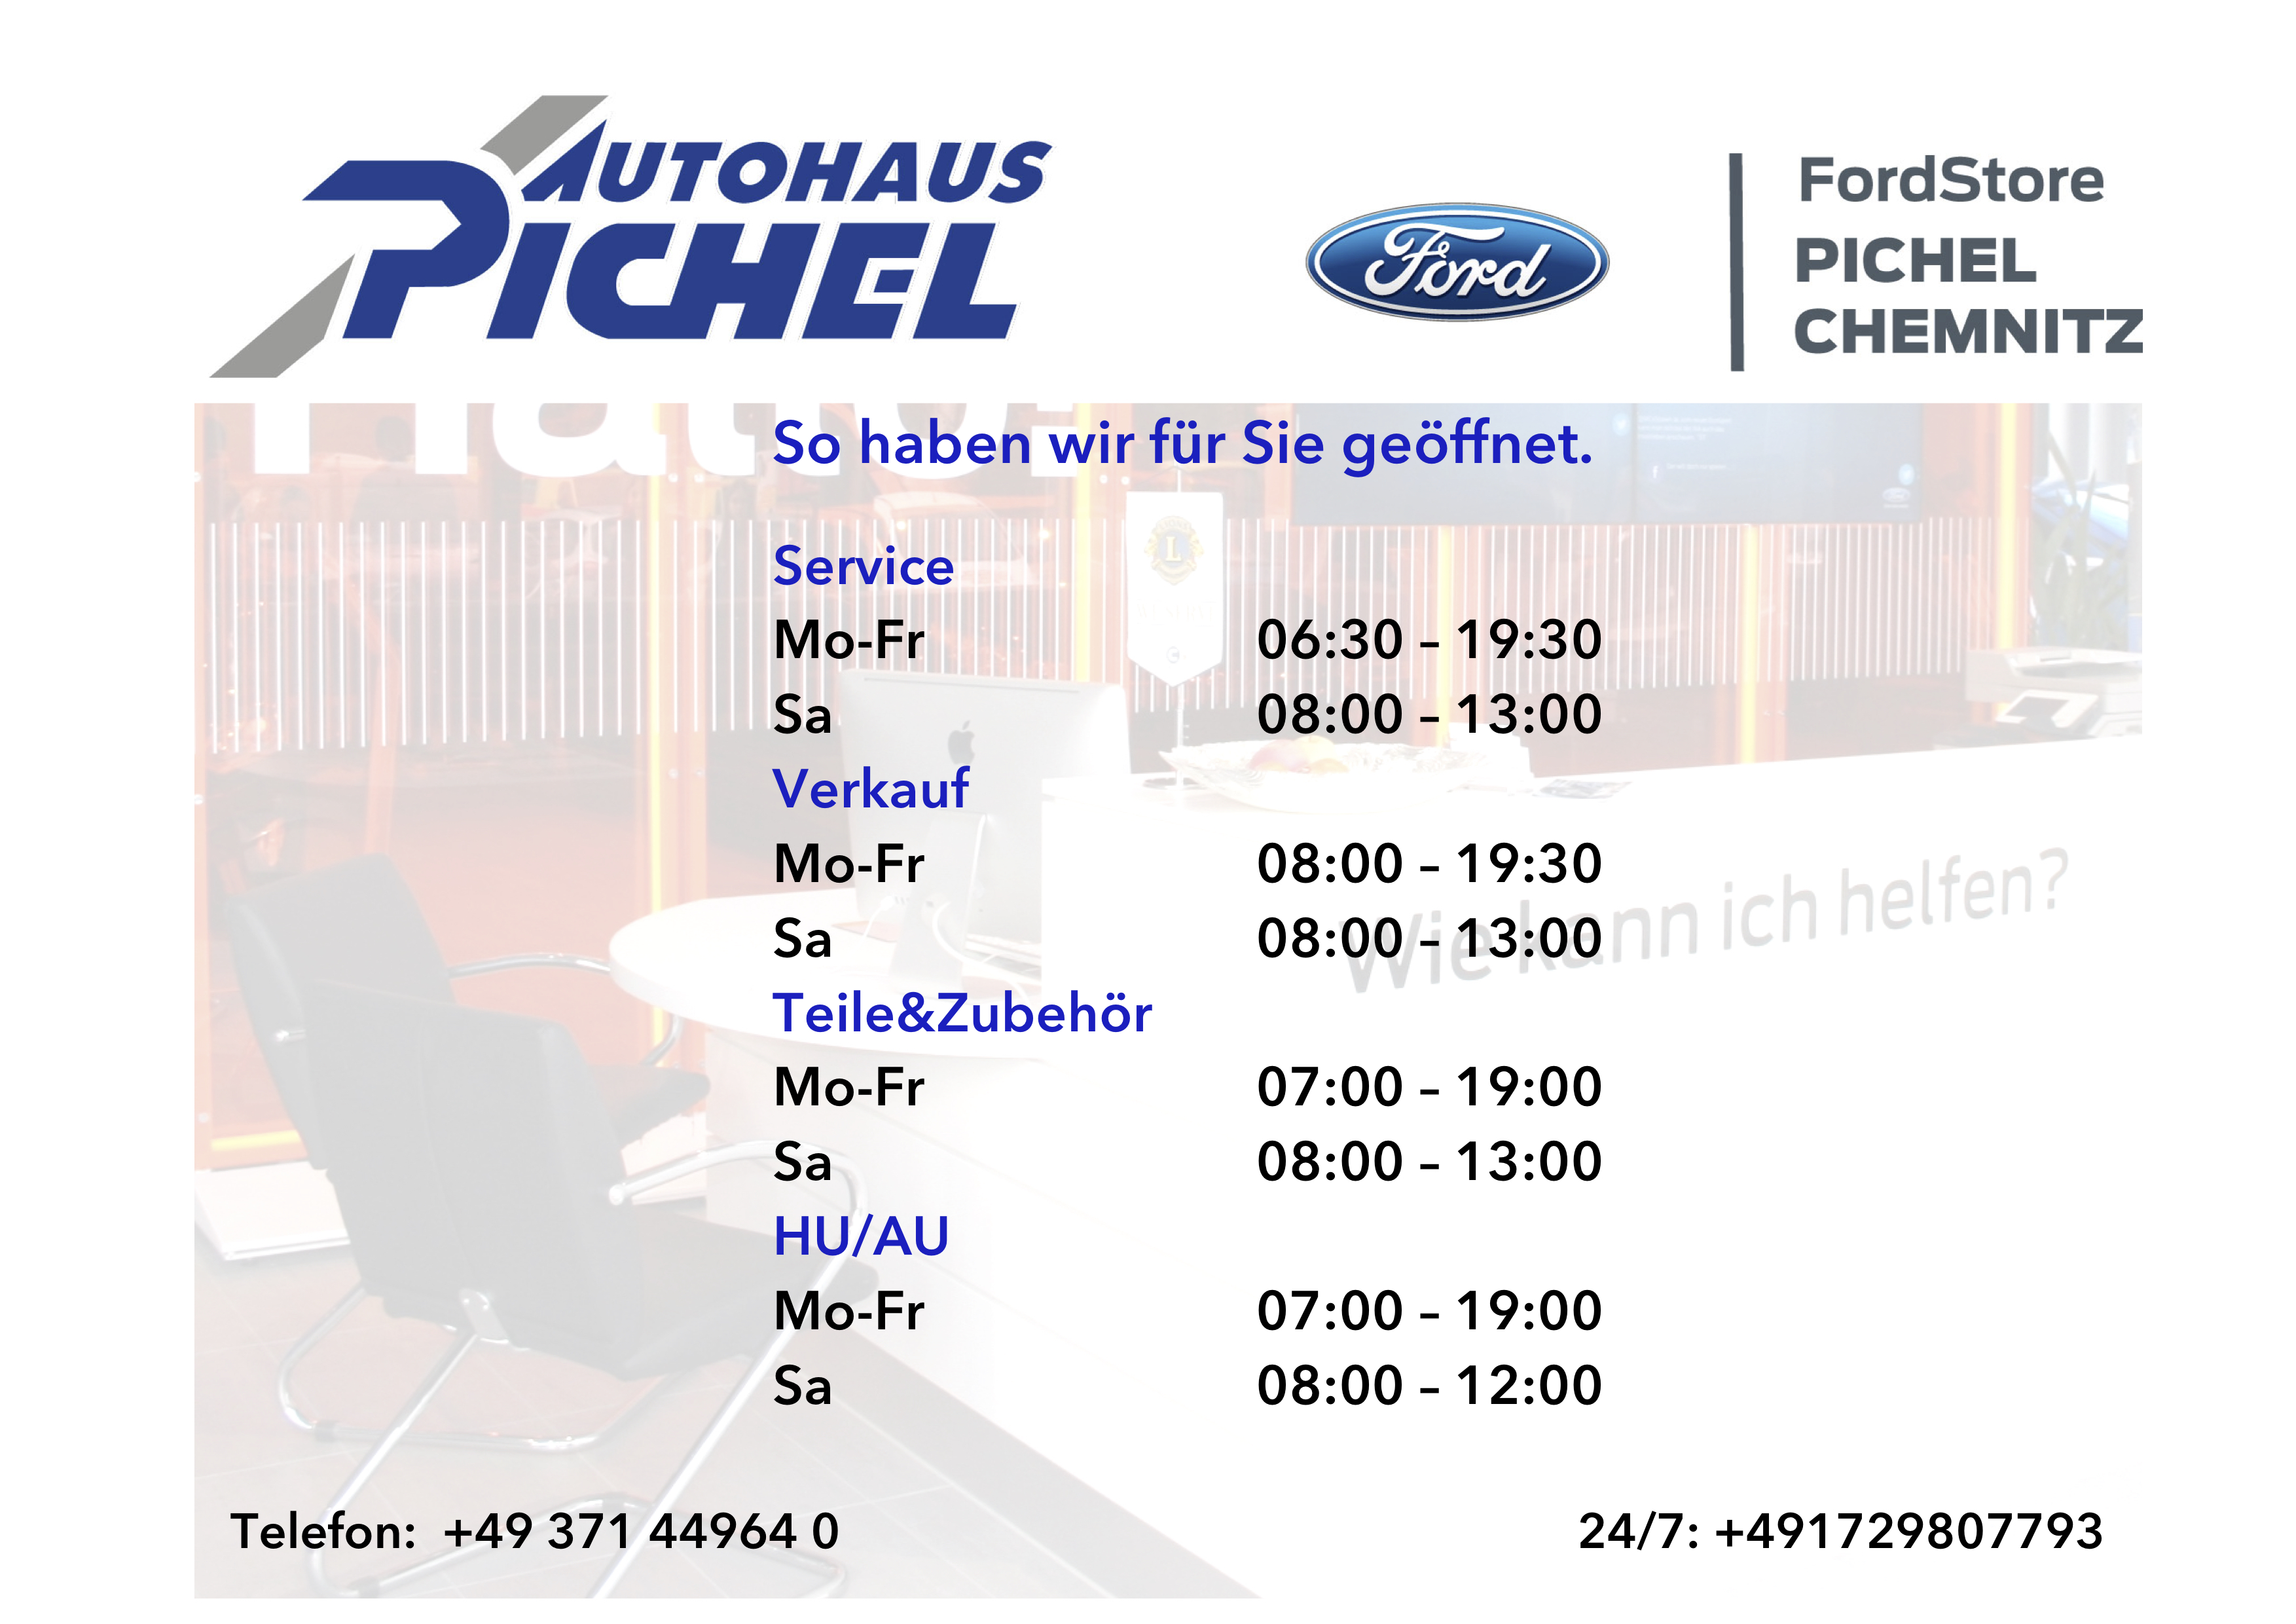 Öffnungszeiten FordStore Pichel Chemnitz